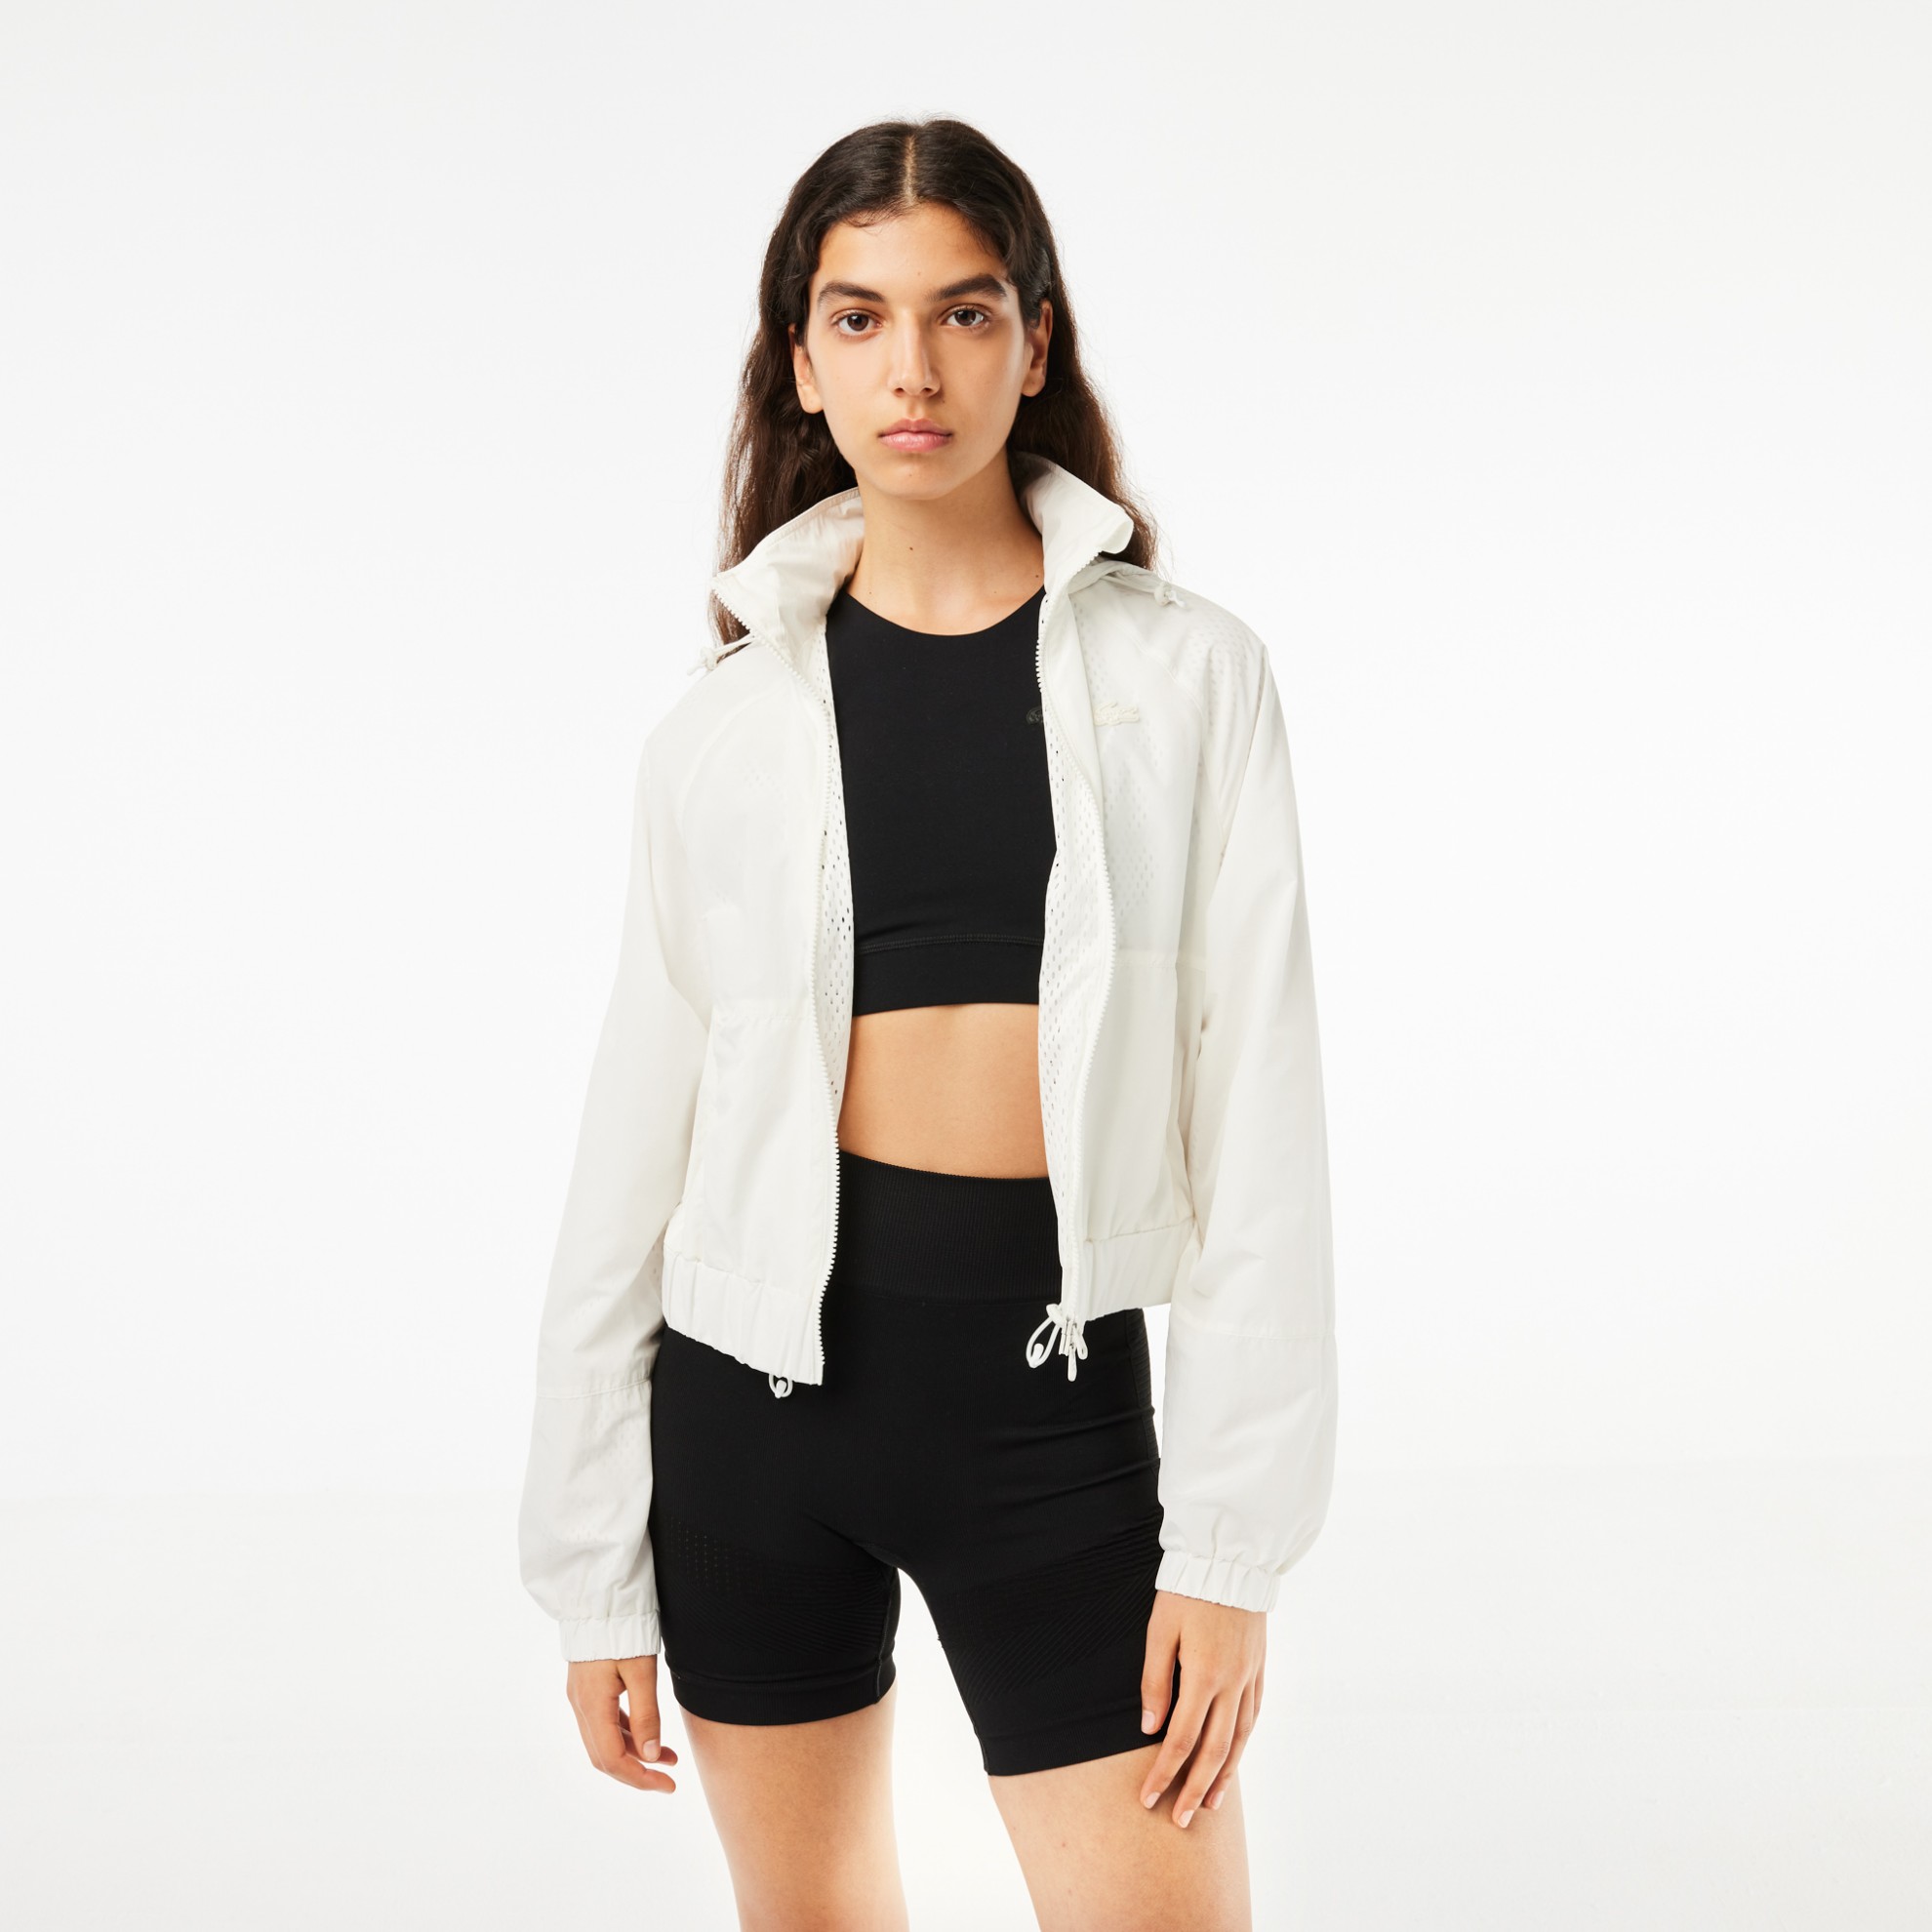 Εικόνα της Γυναικείο Zipped Nylon Sportsuit Jacket με Κουκουλα